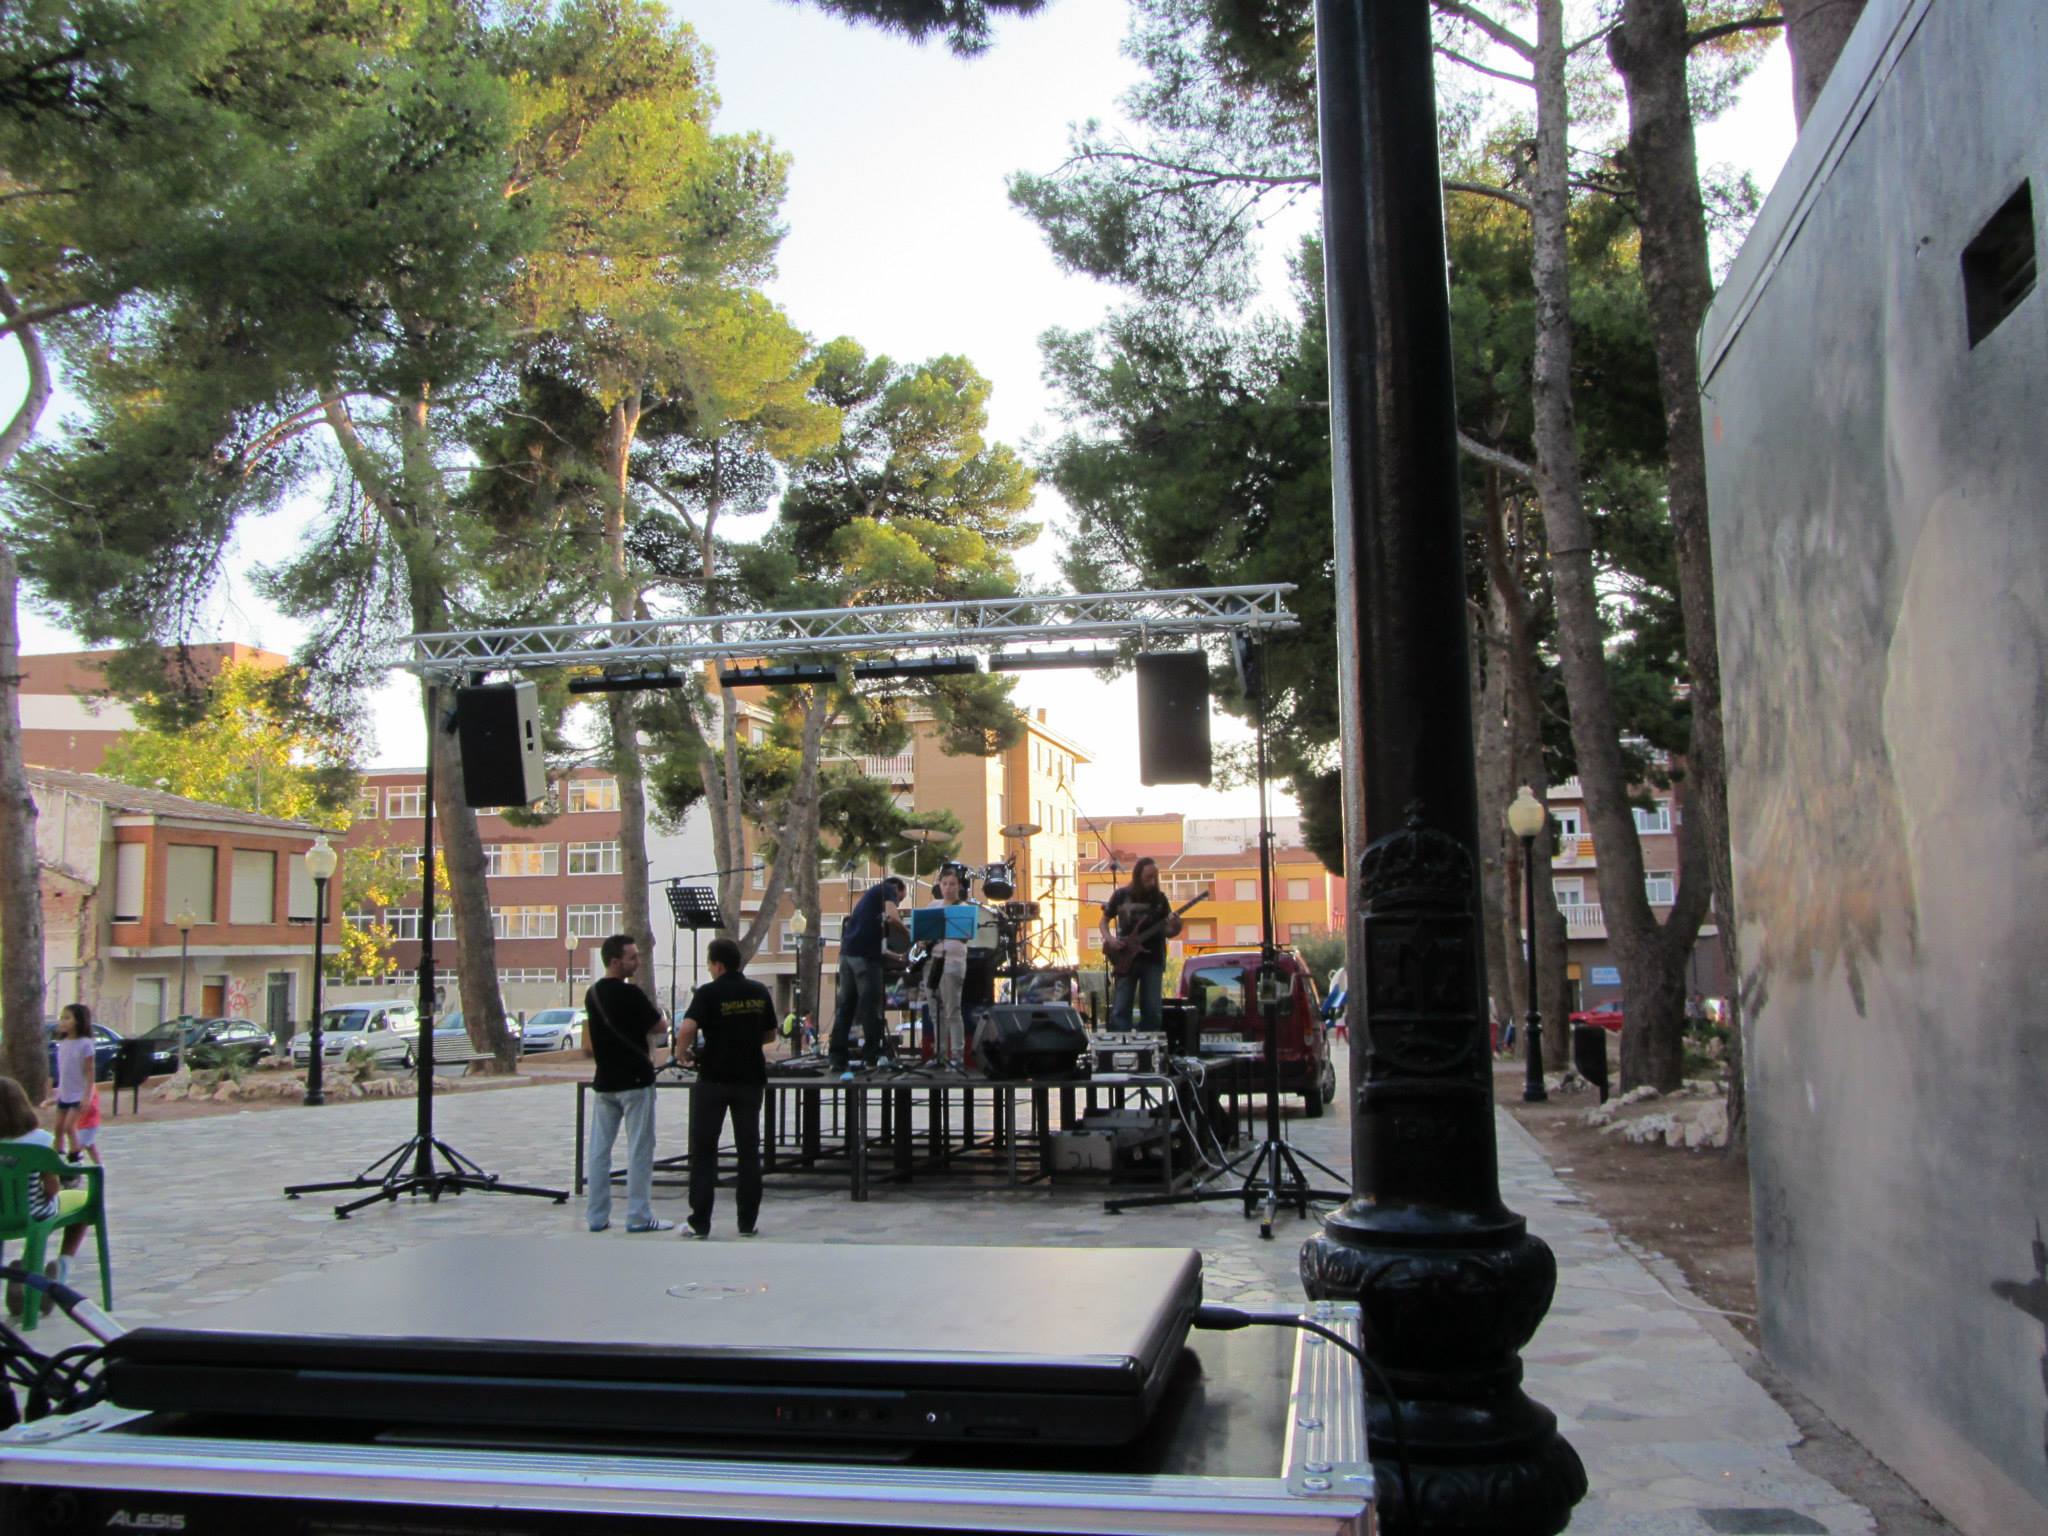 Concierto de grupo local @ Ibi, Alicante (España)